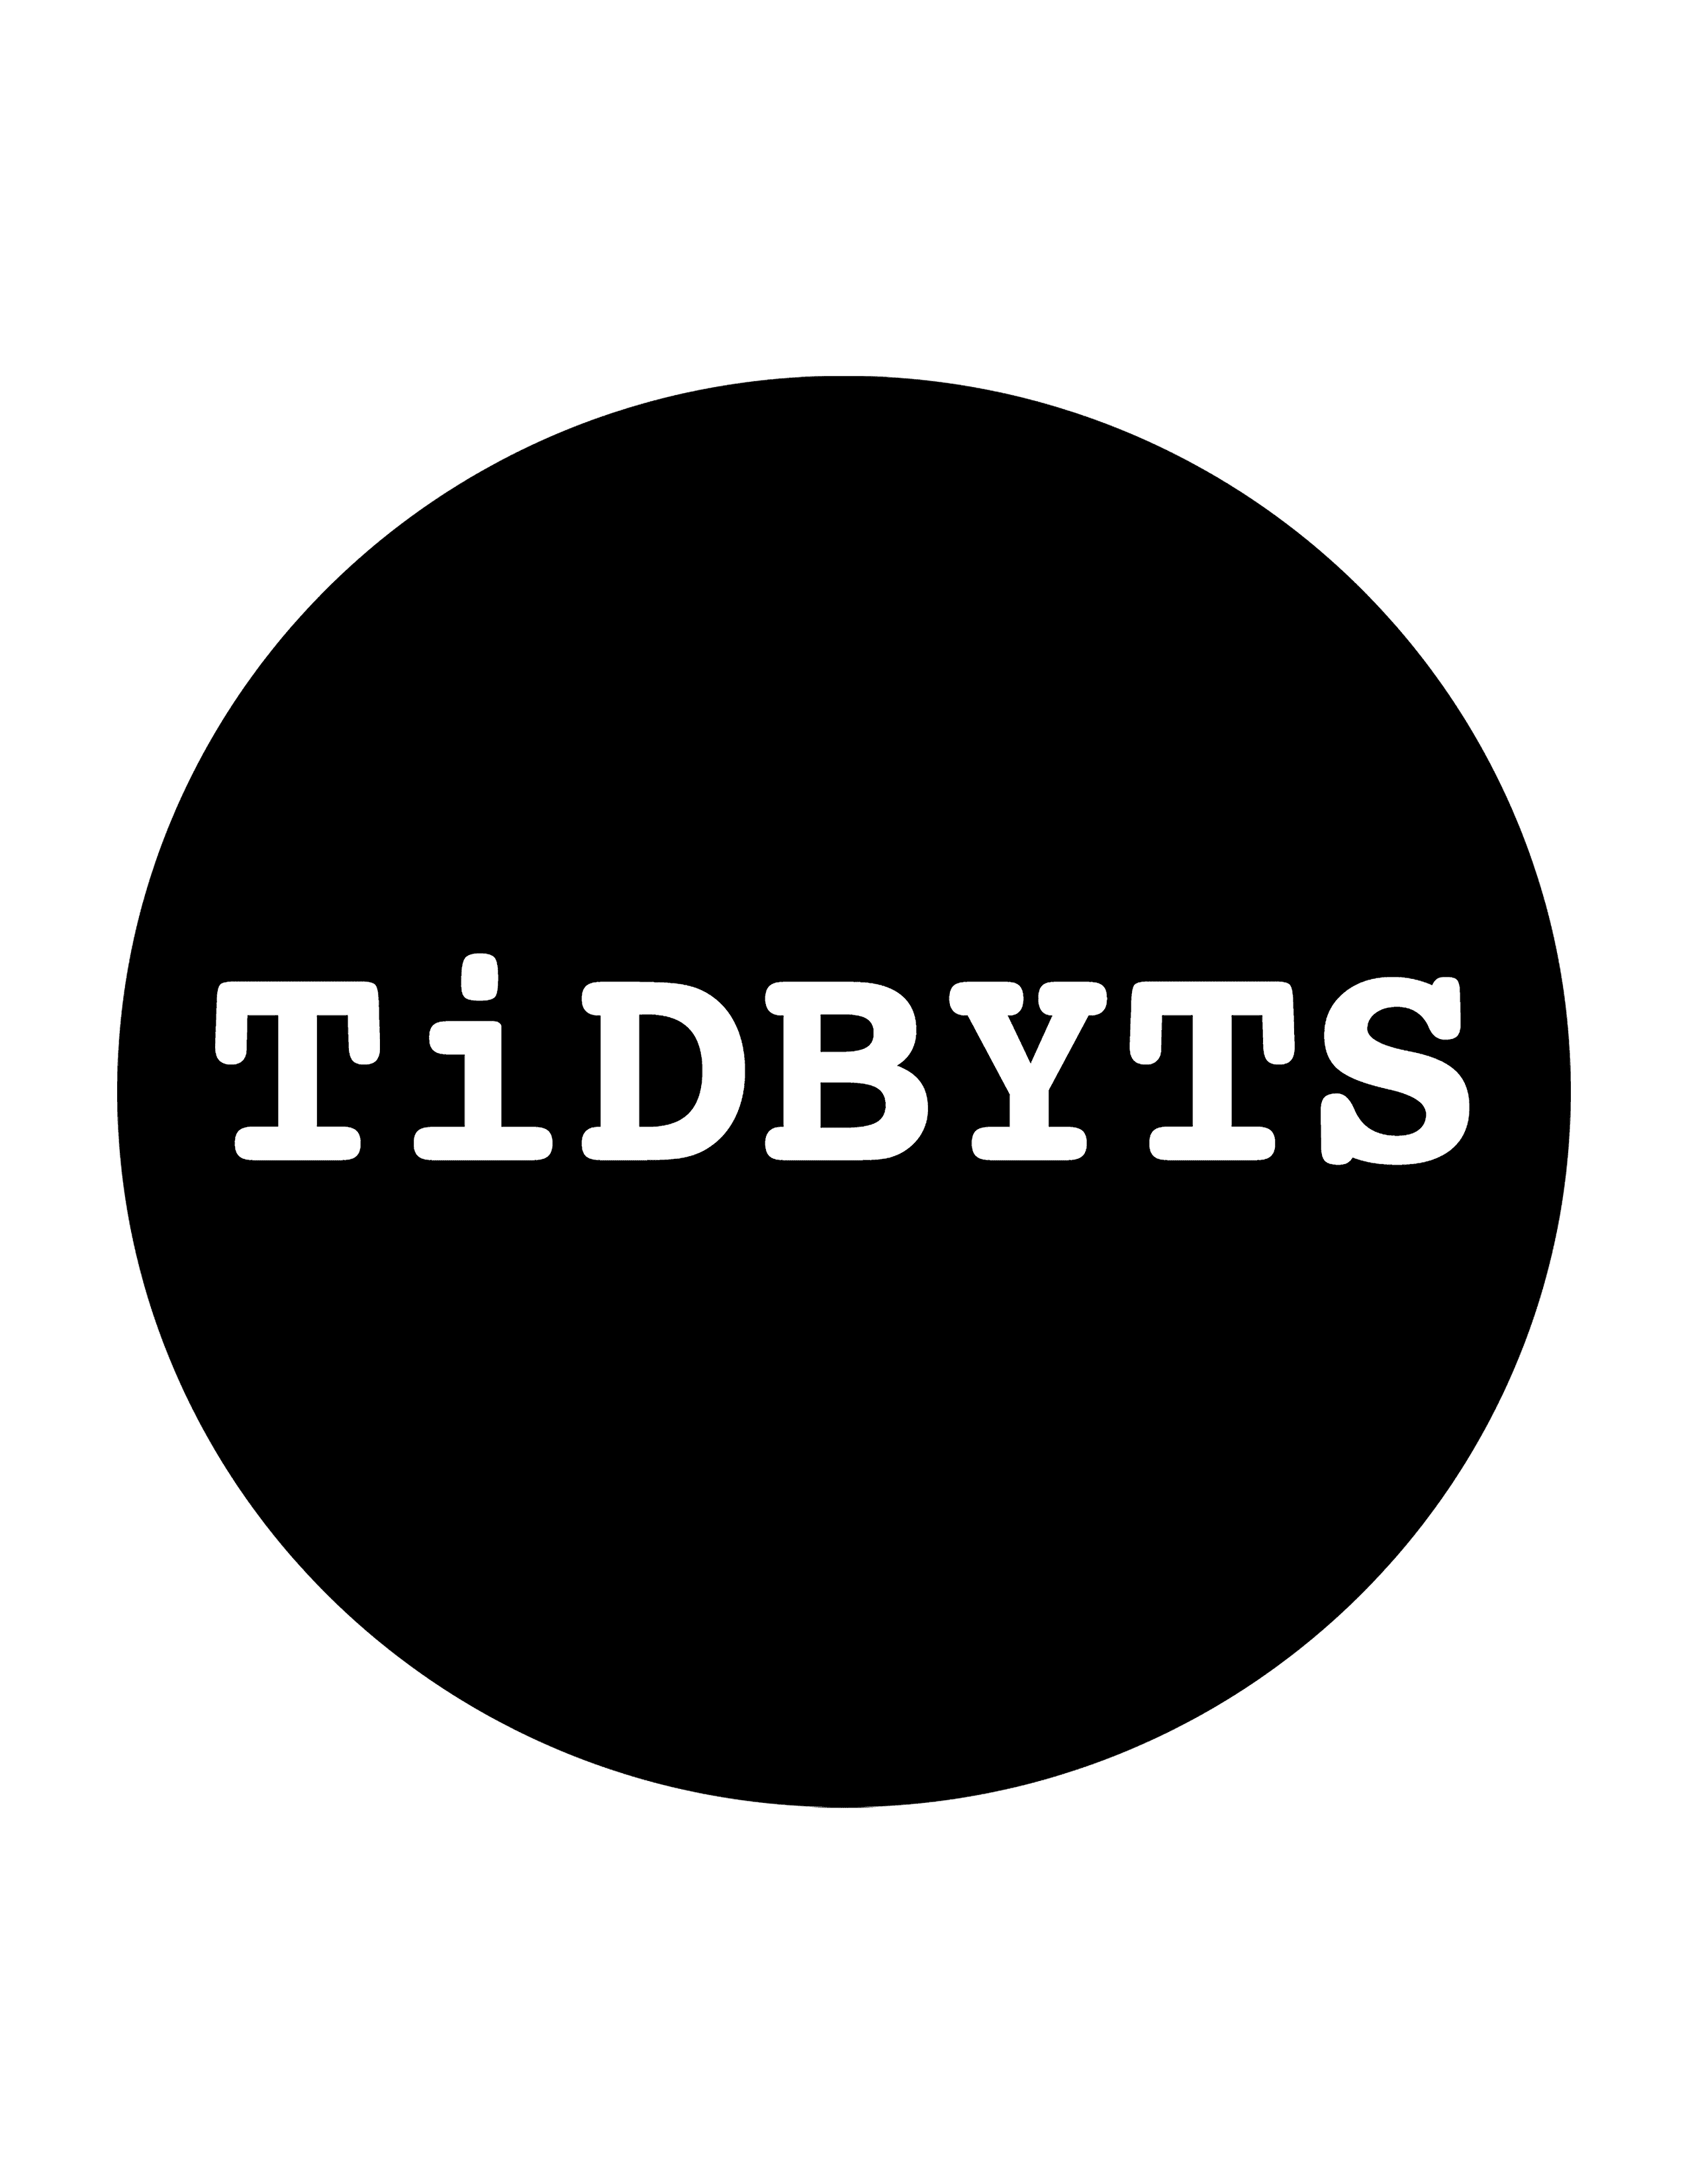 TiDBYTS